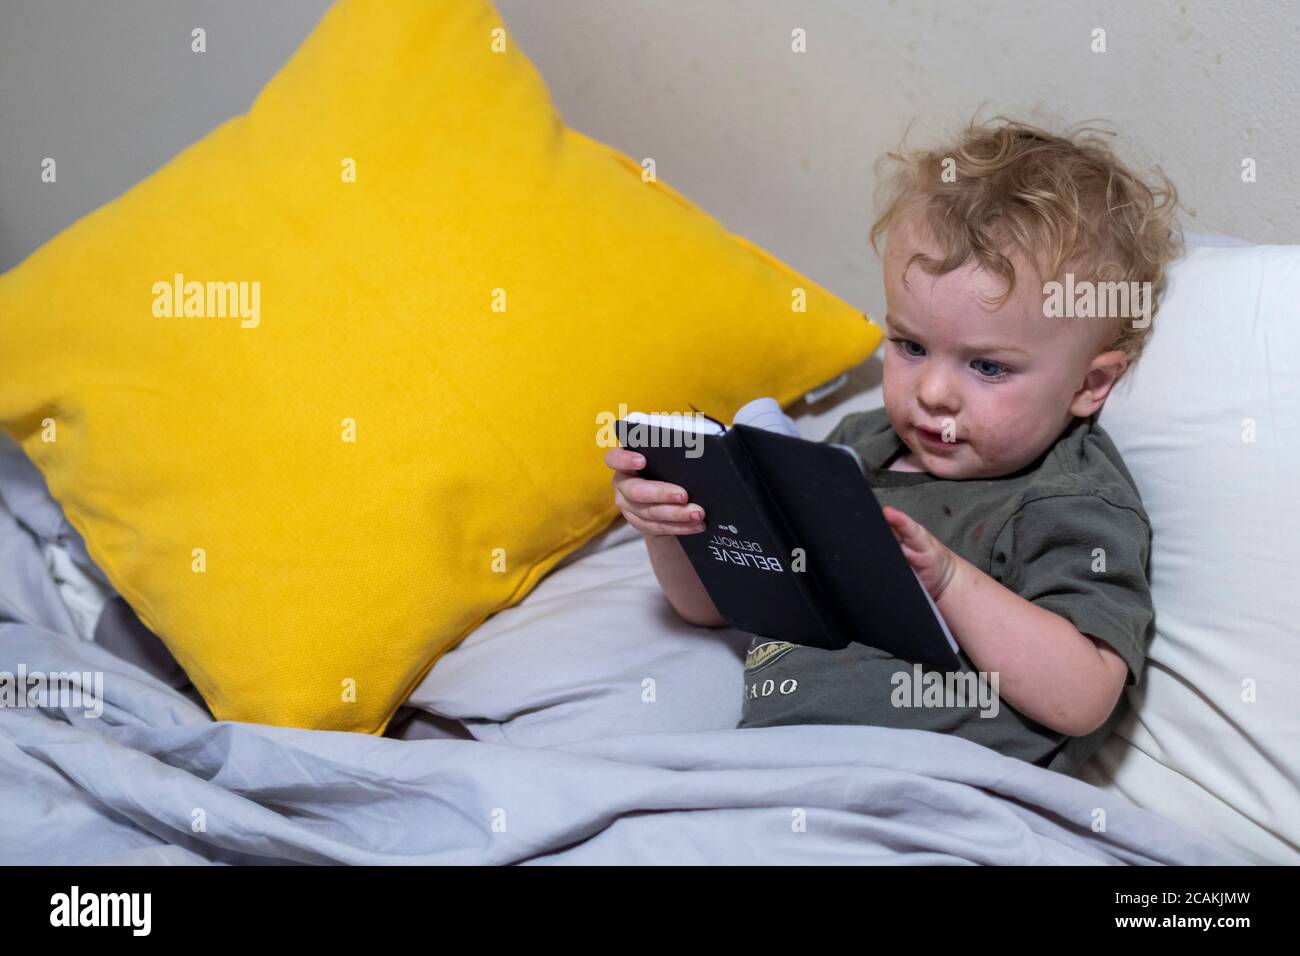 Denver, Colorado - die zweijährige Hendrix Hjermstad hält ein Buch auf dem Kopf, während er vorgibt zu lesen. Stockfoto